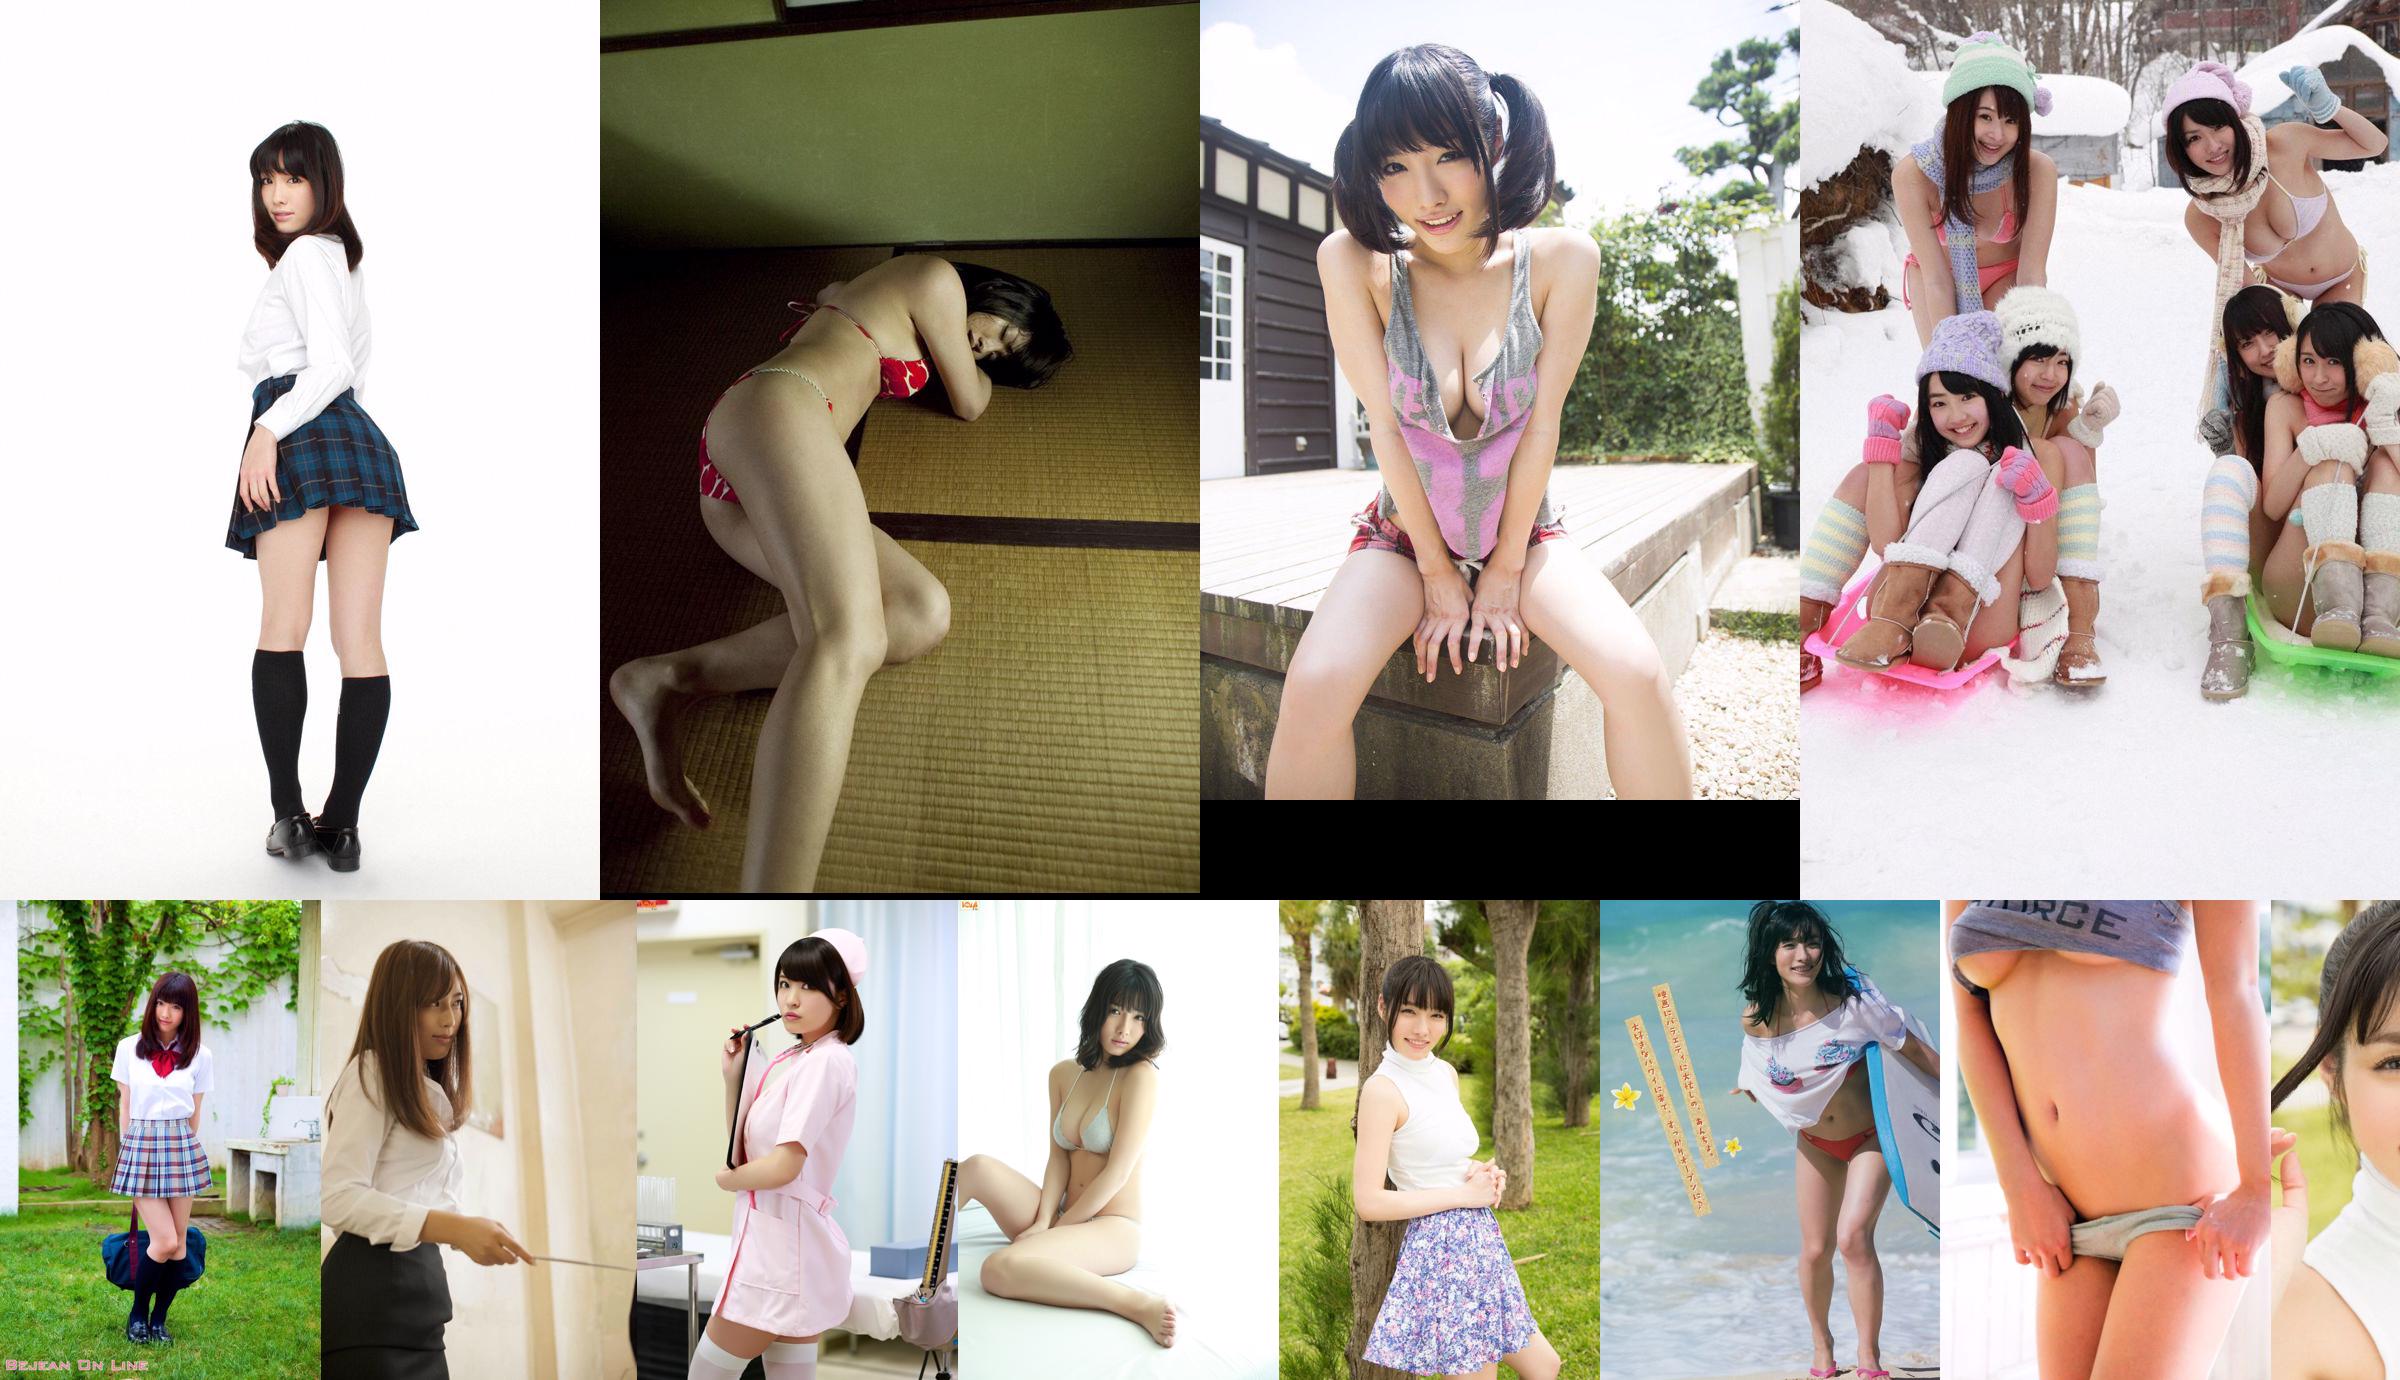 [นิตยสาร Young] Konno Xingnan, Sakurai Reika, Fukagawa Mai, Kamishi Xinglai 2014 No.46 Photo Magazine No.f6acd6 หน้า 4